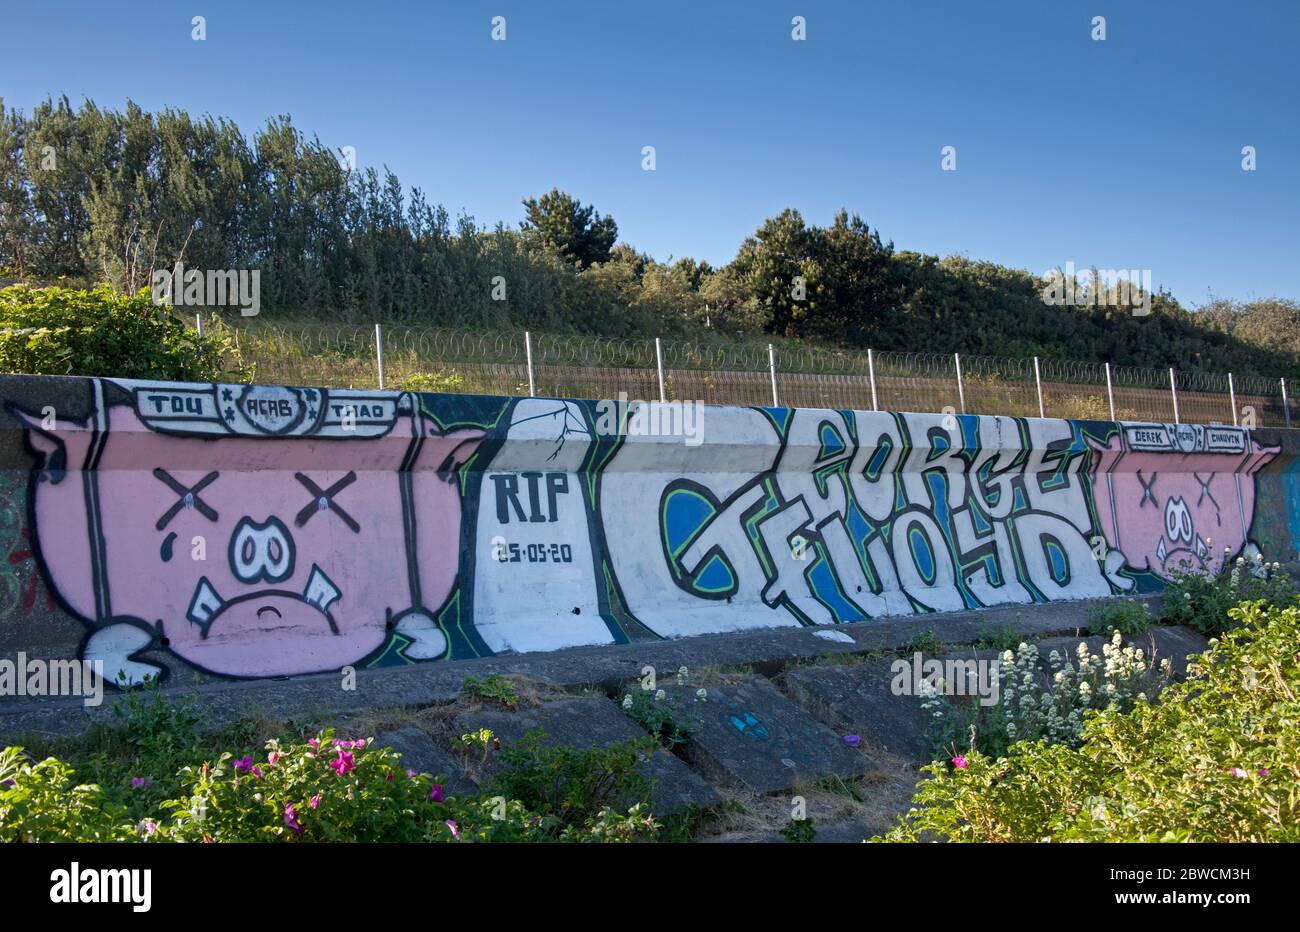 Portobello, Edimburgo, Scozia, Regno Unito. 31 maggio 2020. Un tributo d'arte di graffiti è stato dipinto all'estremità di Seafield di Portobello Beach, dopo la tragica morte di George Floyd, mentre attualmente i manifestanti in tutti gli Stati Uniti stanno dimostrando contro la brutalità della polizia nei confronti degli afroamericani.le parole 'RIP 25/05/2020 George Floyd', Sono scritte accanto alle teste dei maiali dietro le sbarre e il nome del disgraziato poliziotto di Minneapolis Derek Chauvin, accusato dell'uccisione di Floyd. Credit: Arch White/Alamy Live News. Foto Stock